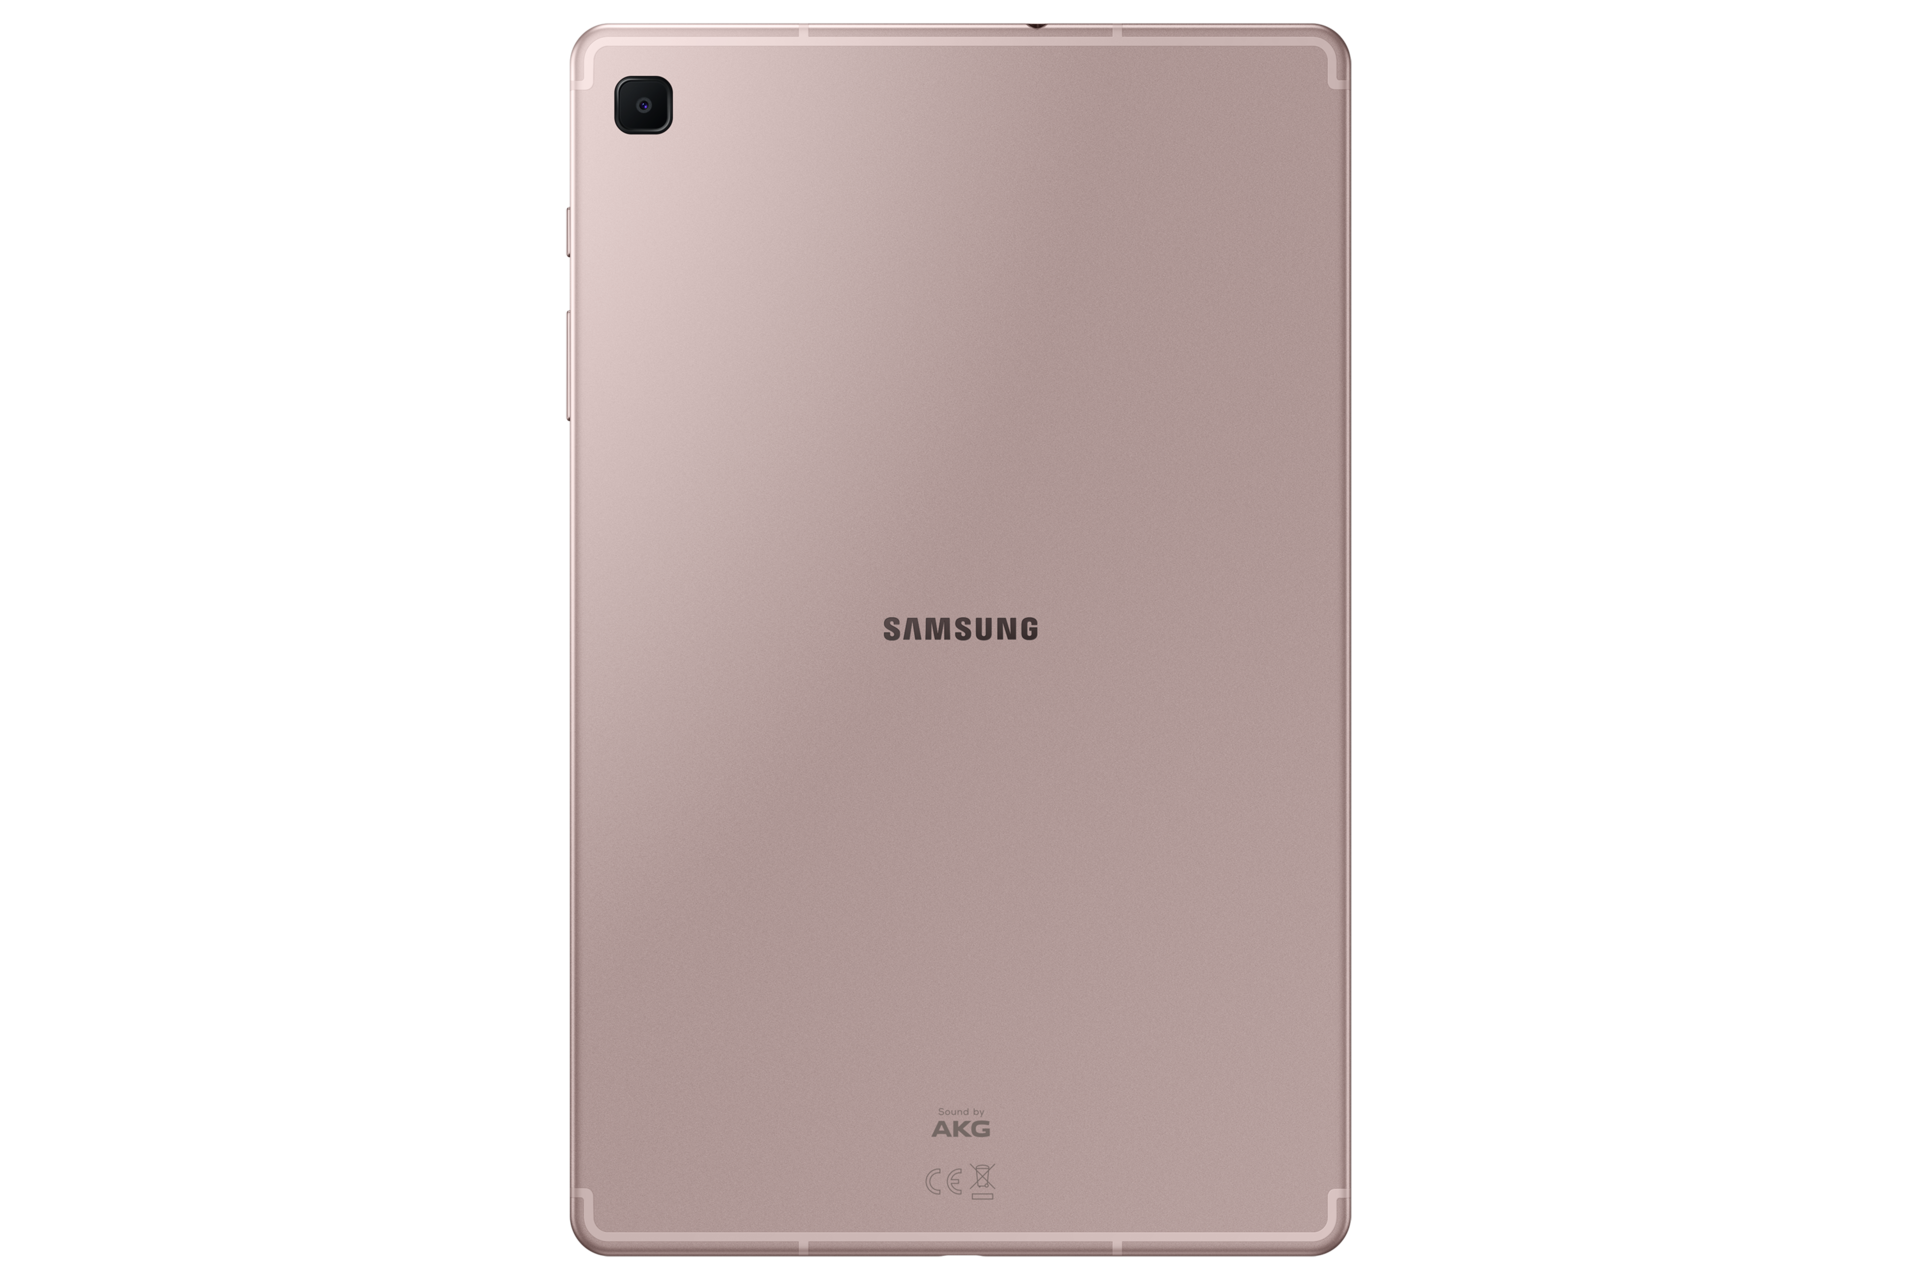 Galaxy Tab S6 Lite (Wi-Fi), SM-P610NZIETGY